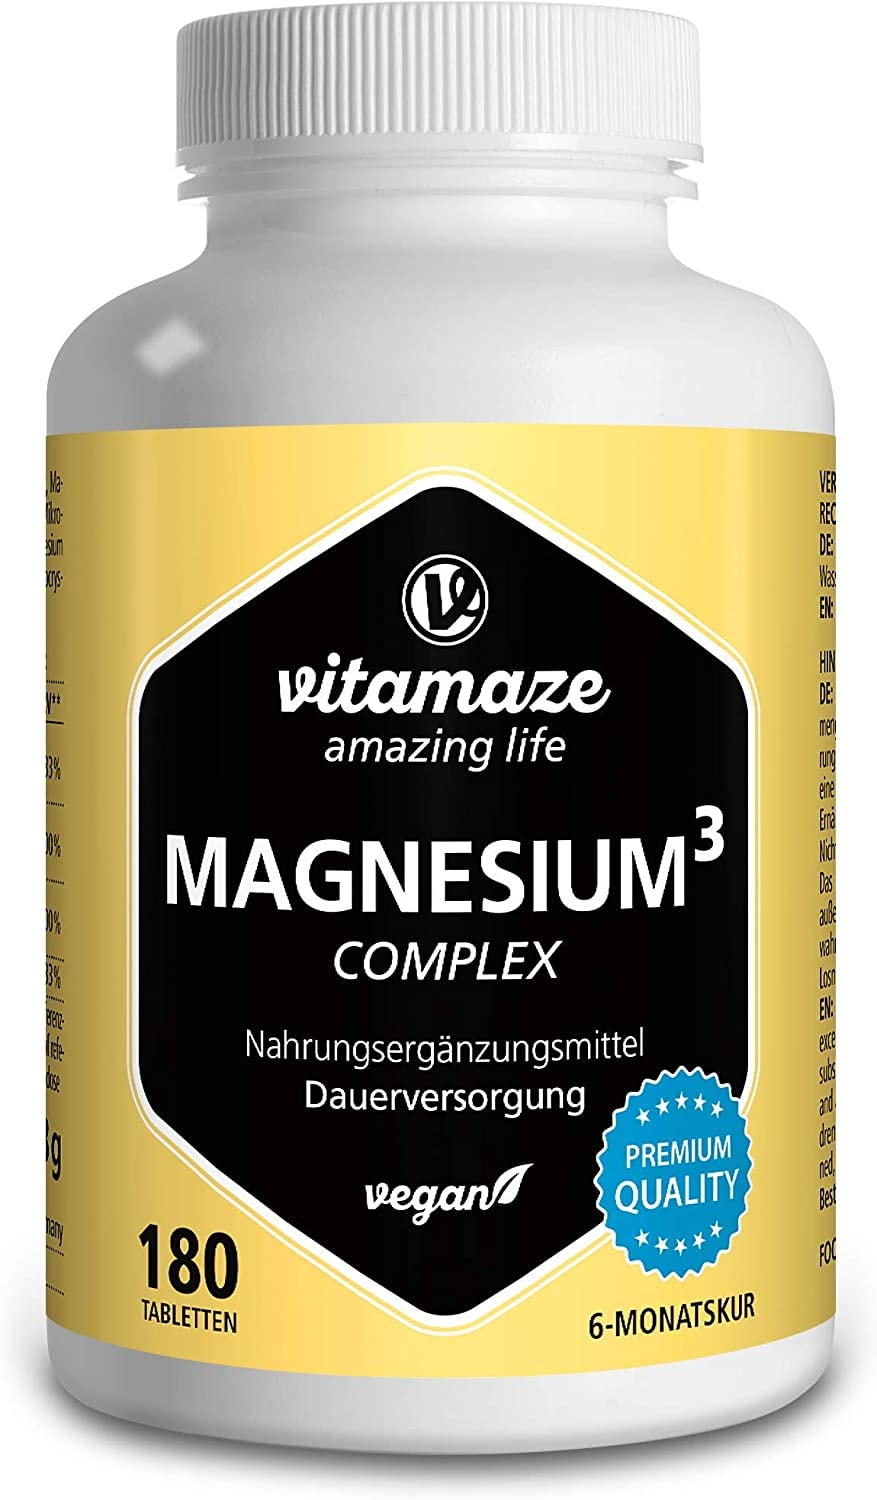 Vitamaze - amazing life - Magnesium Komplex hochdosiert, 350 mg elementares Magnesium mit 24h Depot-Effekt, 180 Tabletten vegan, Magnesium-Citrat-Carbonat-Oxid ohne Zusatzstoffe, Made in Germany